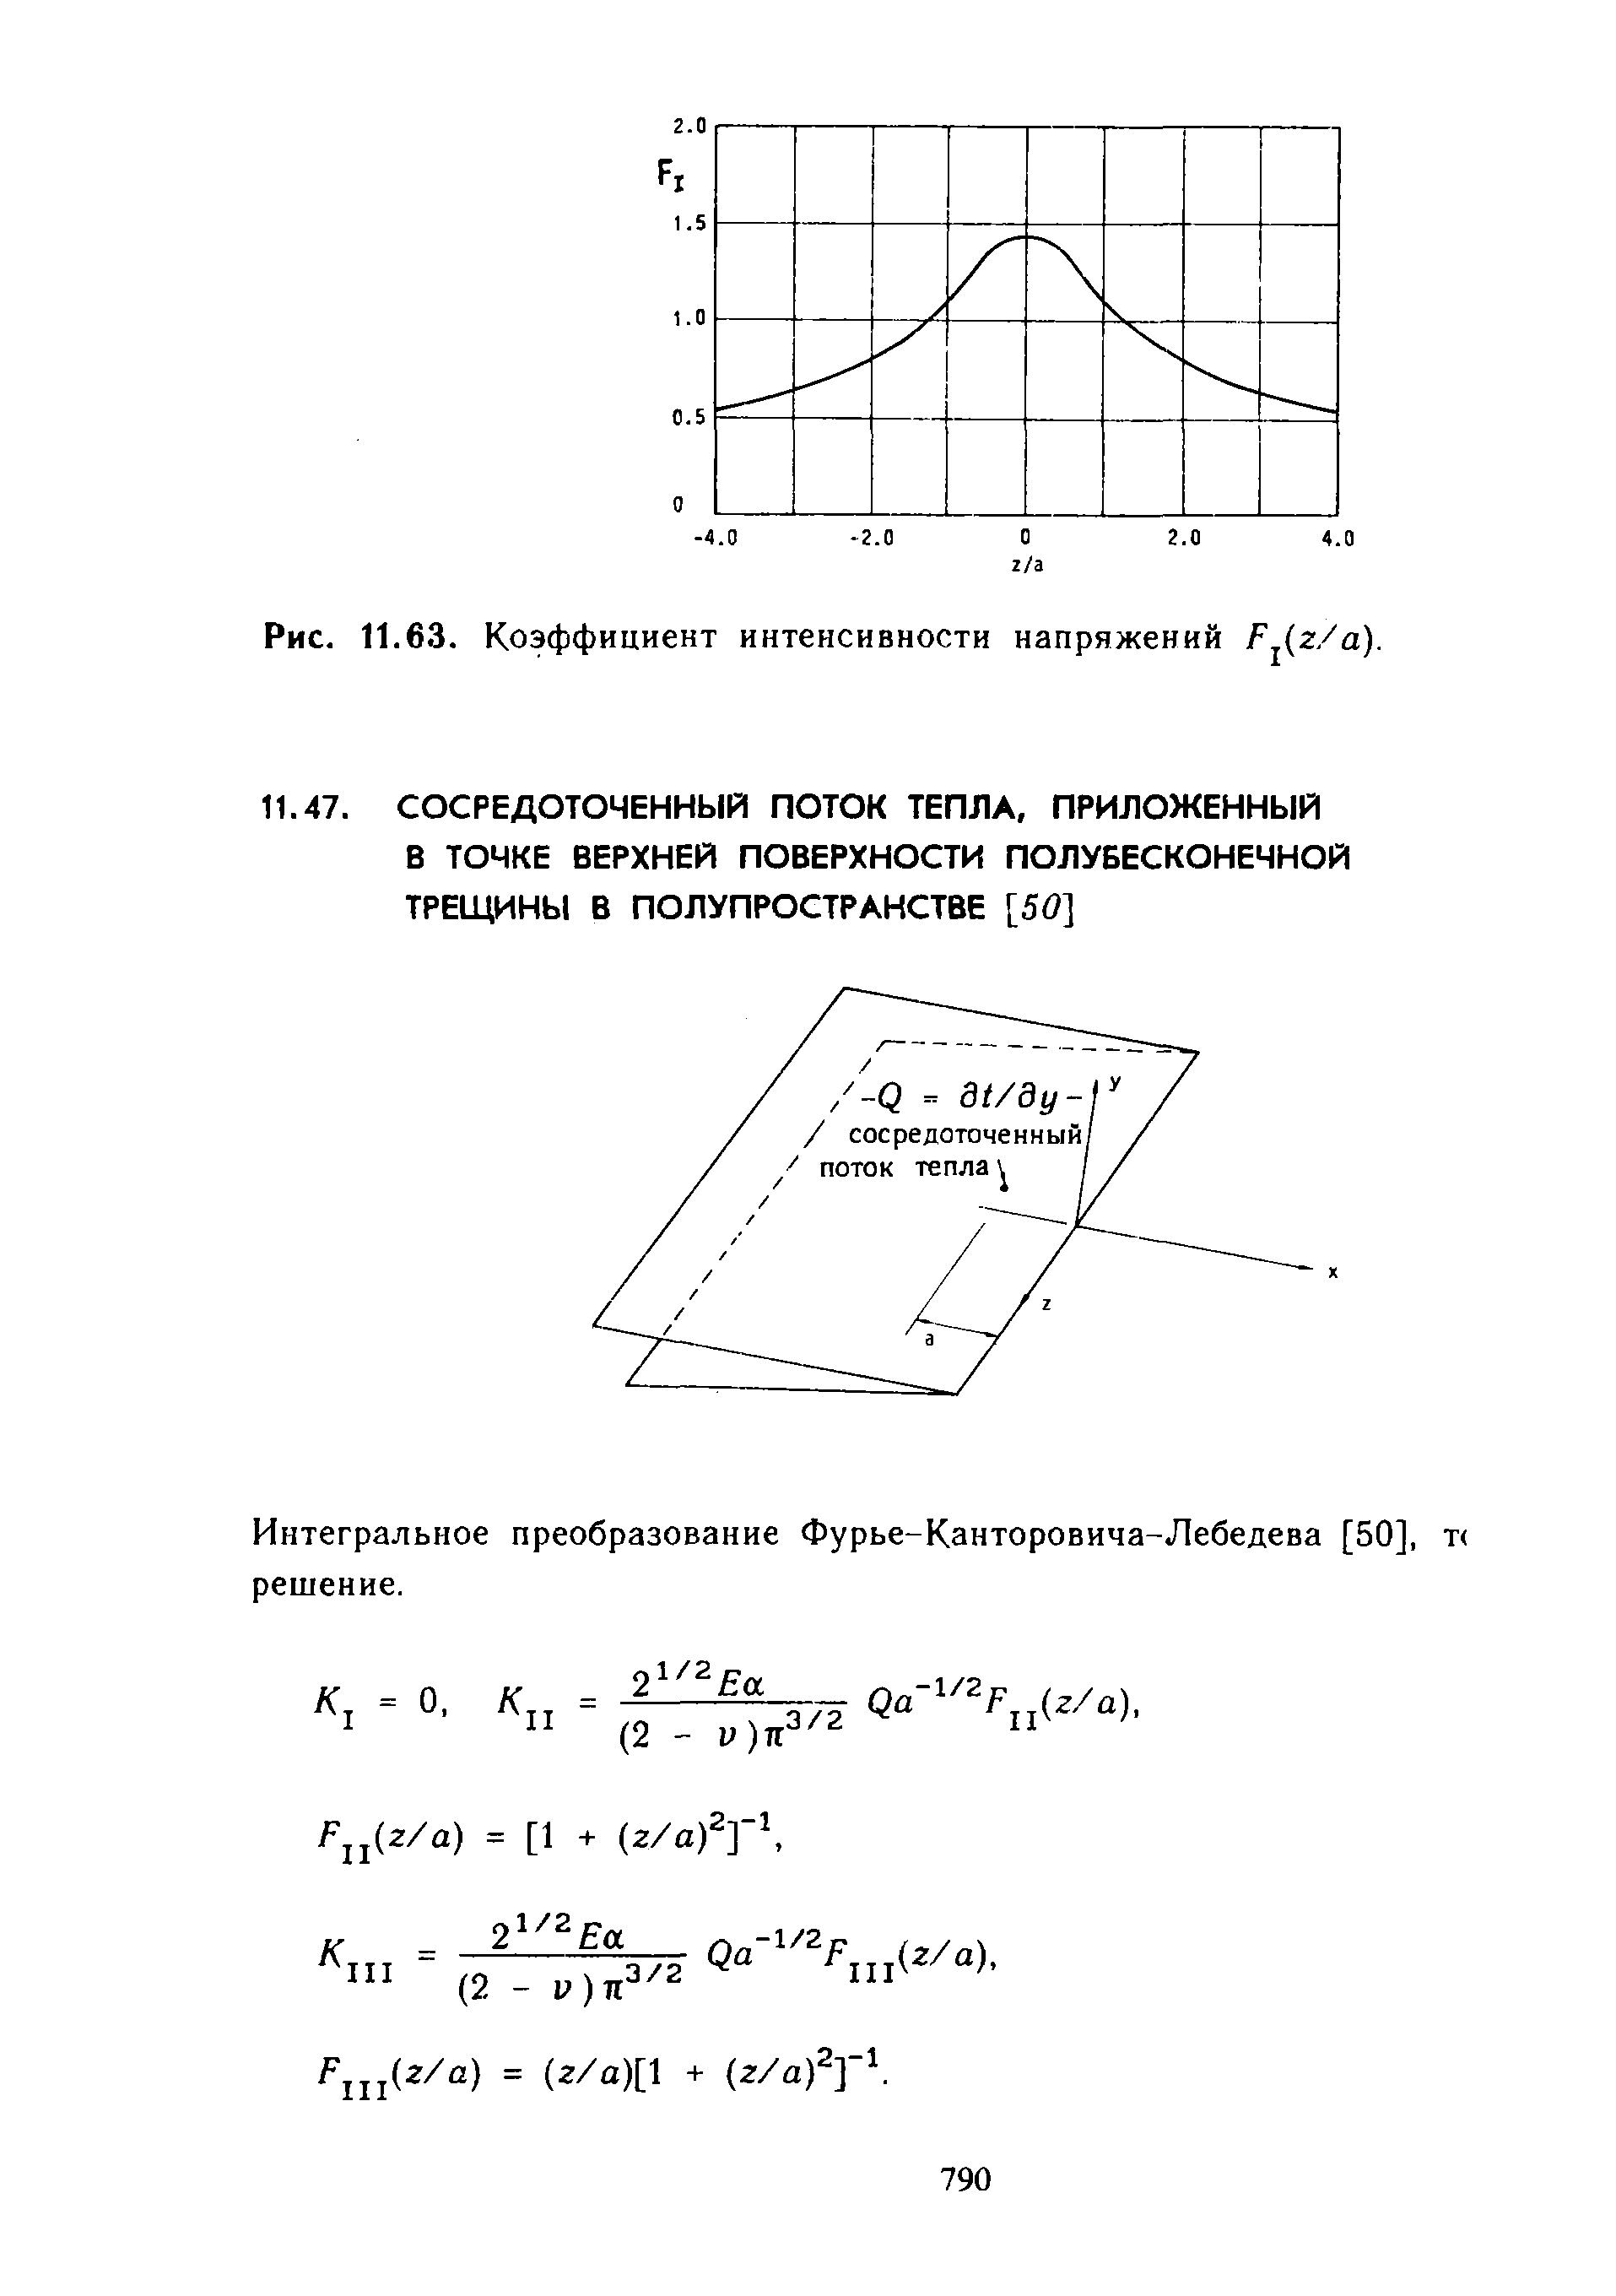 Интегральное преобразование Фурье-Канторовича-Лебедева [50], т решение.
